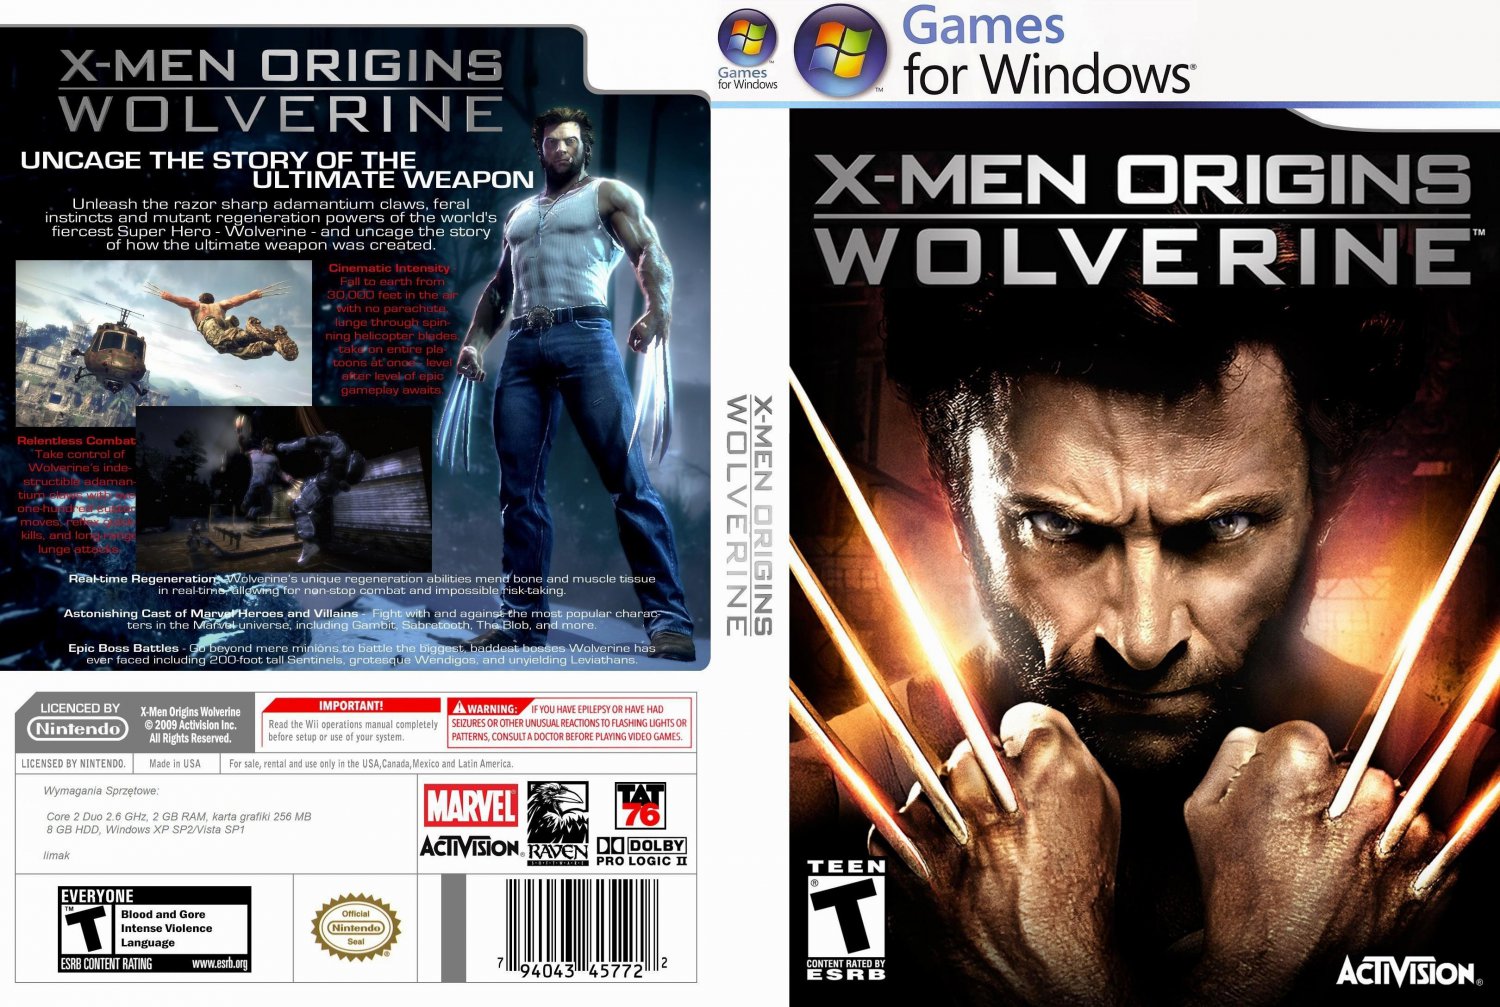 Cùng lưu trữ game X-Men Origins trên PC, để trở thành những người x-men mạnh mẽ, chiến đấu chống lại tội ác và bảo vệ thế giới. Hãy xem hình ảnh liên quan để khám phá một thế giới siêu năng lực đầy hấp dẫn.